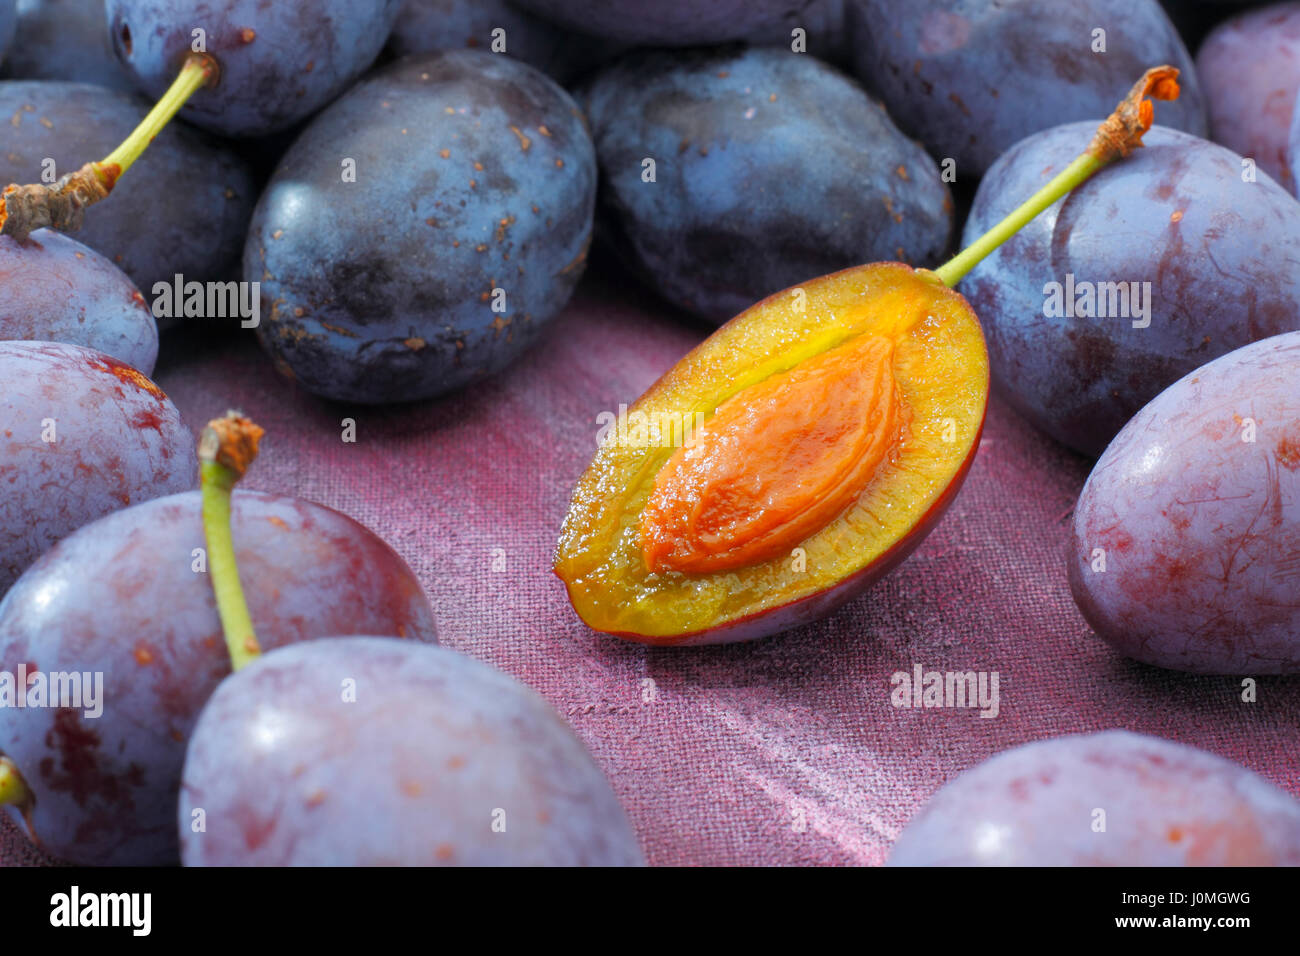 Pflaumenmus, Pflaume (Damaskus) Früchte liegen auf lackiert Textile Hintergrund. Eine Frucht mit sichtbaren Stein (Kernel) halbiert. Stockfoto